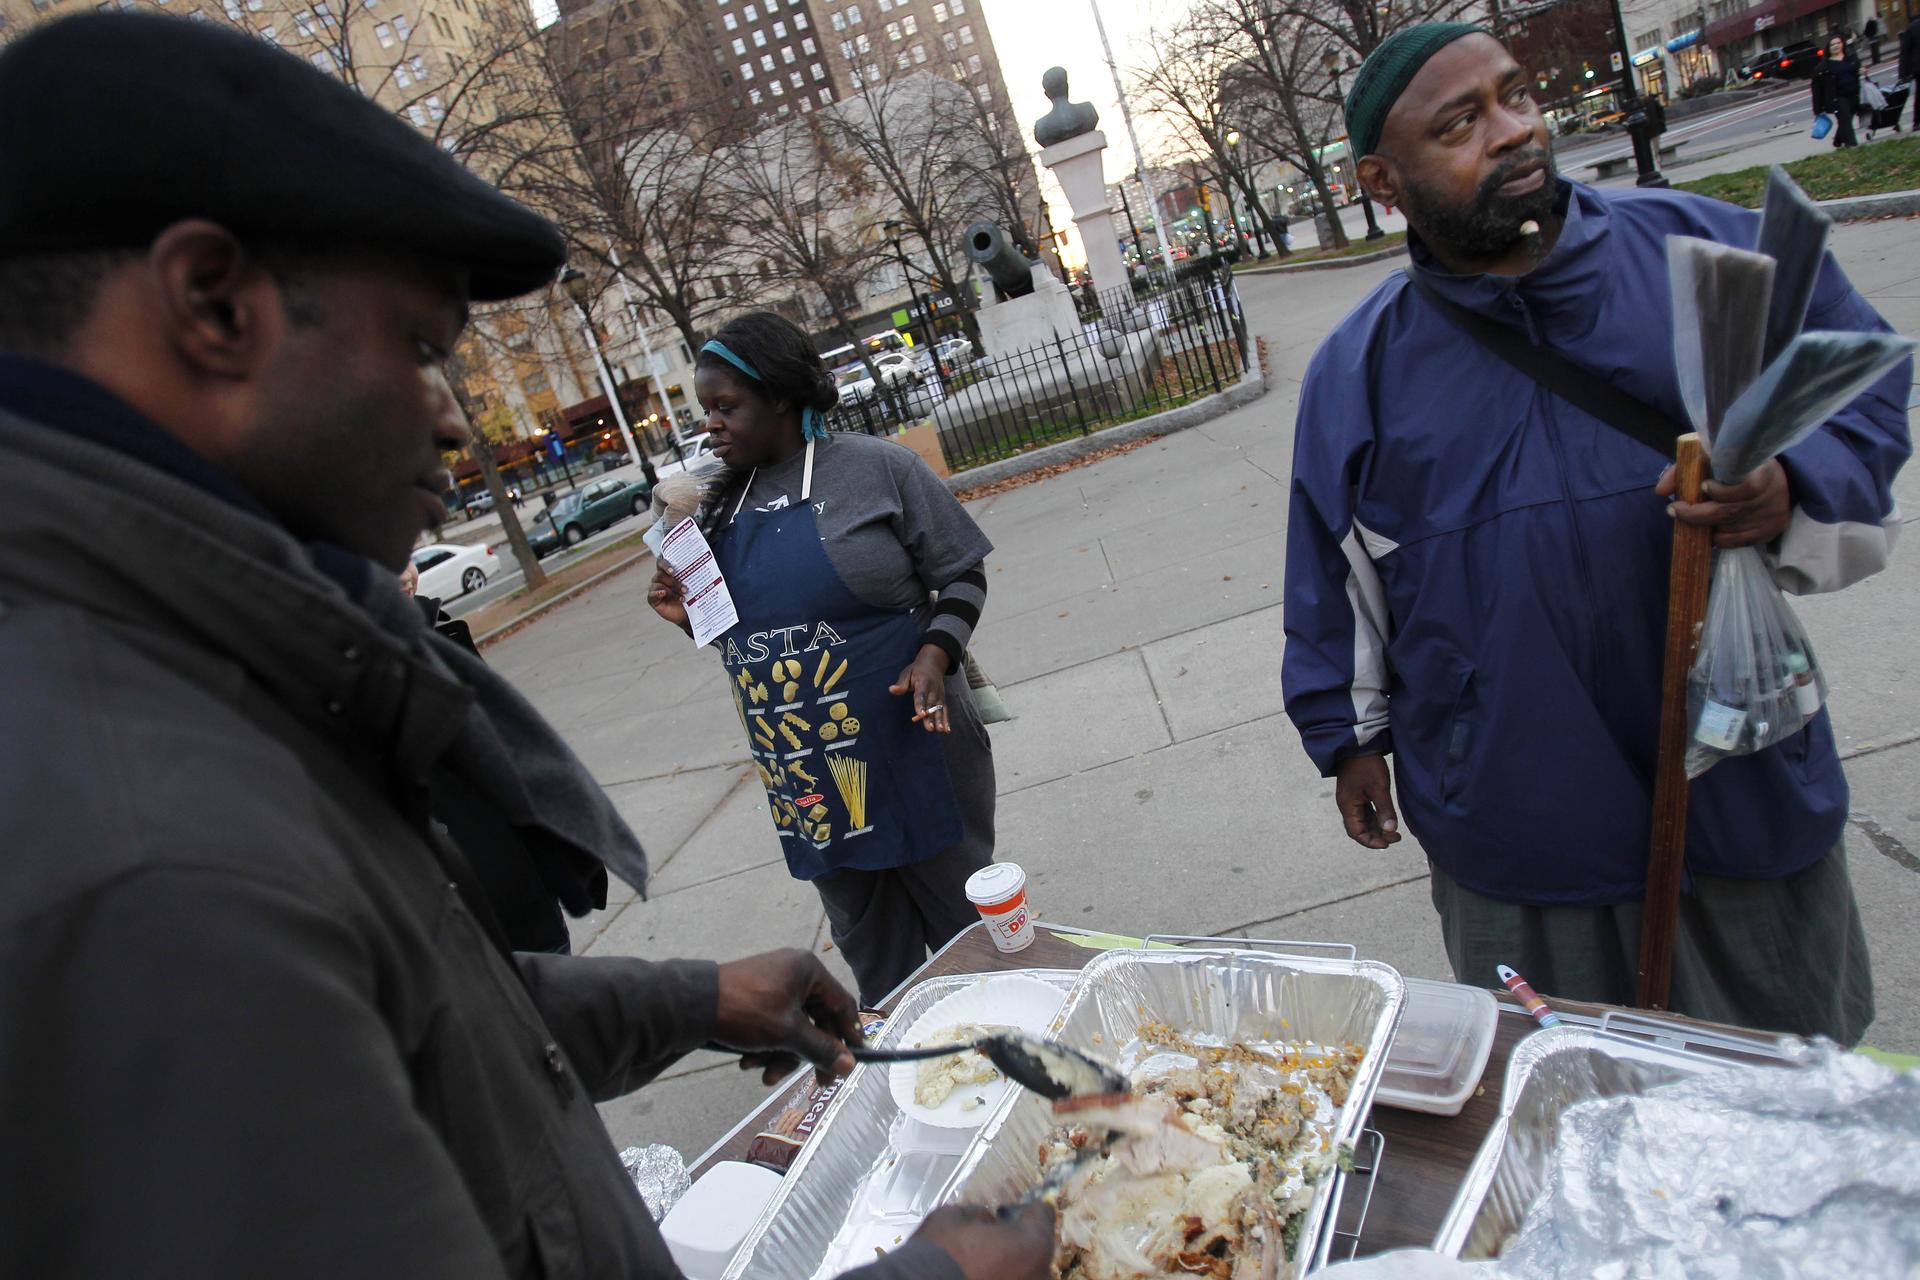 Armutshilfe zu Thanksgiving in USA